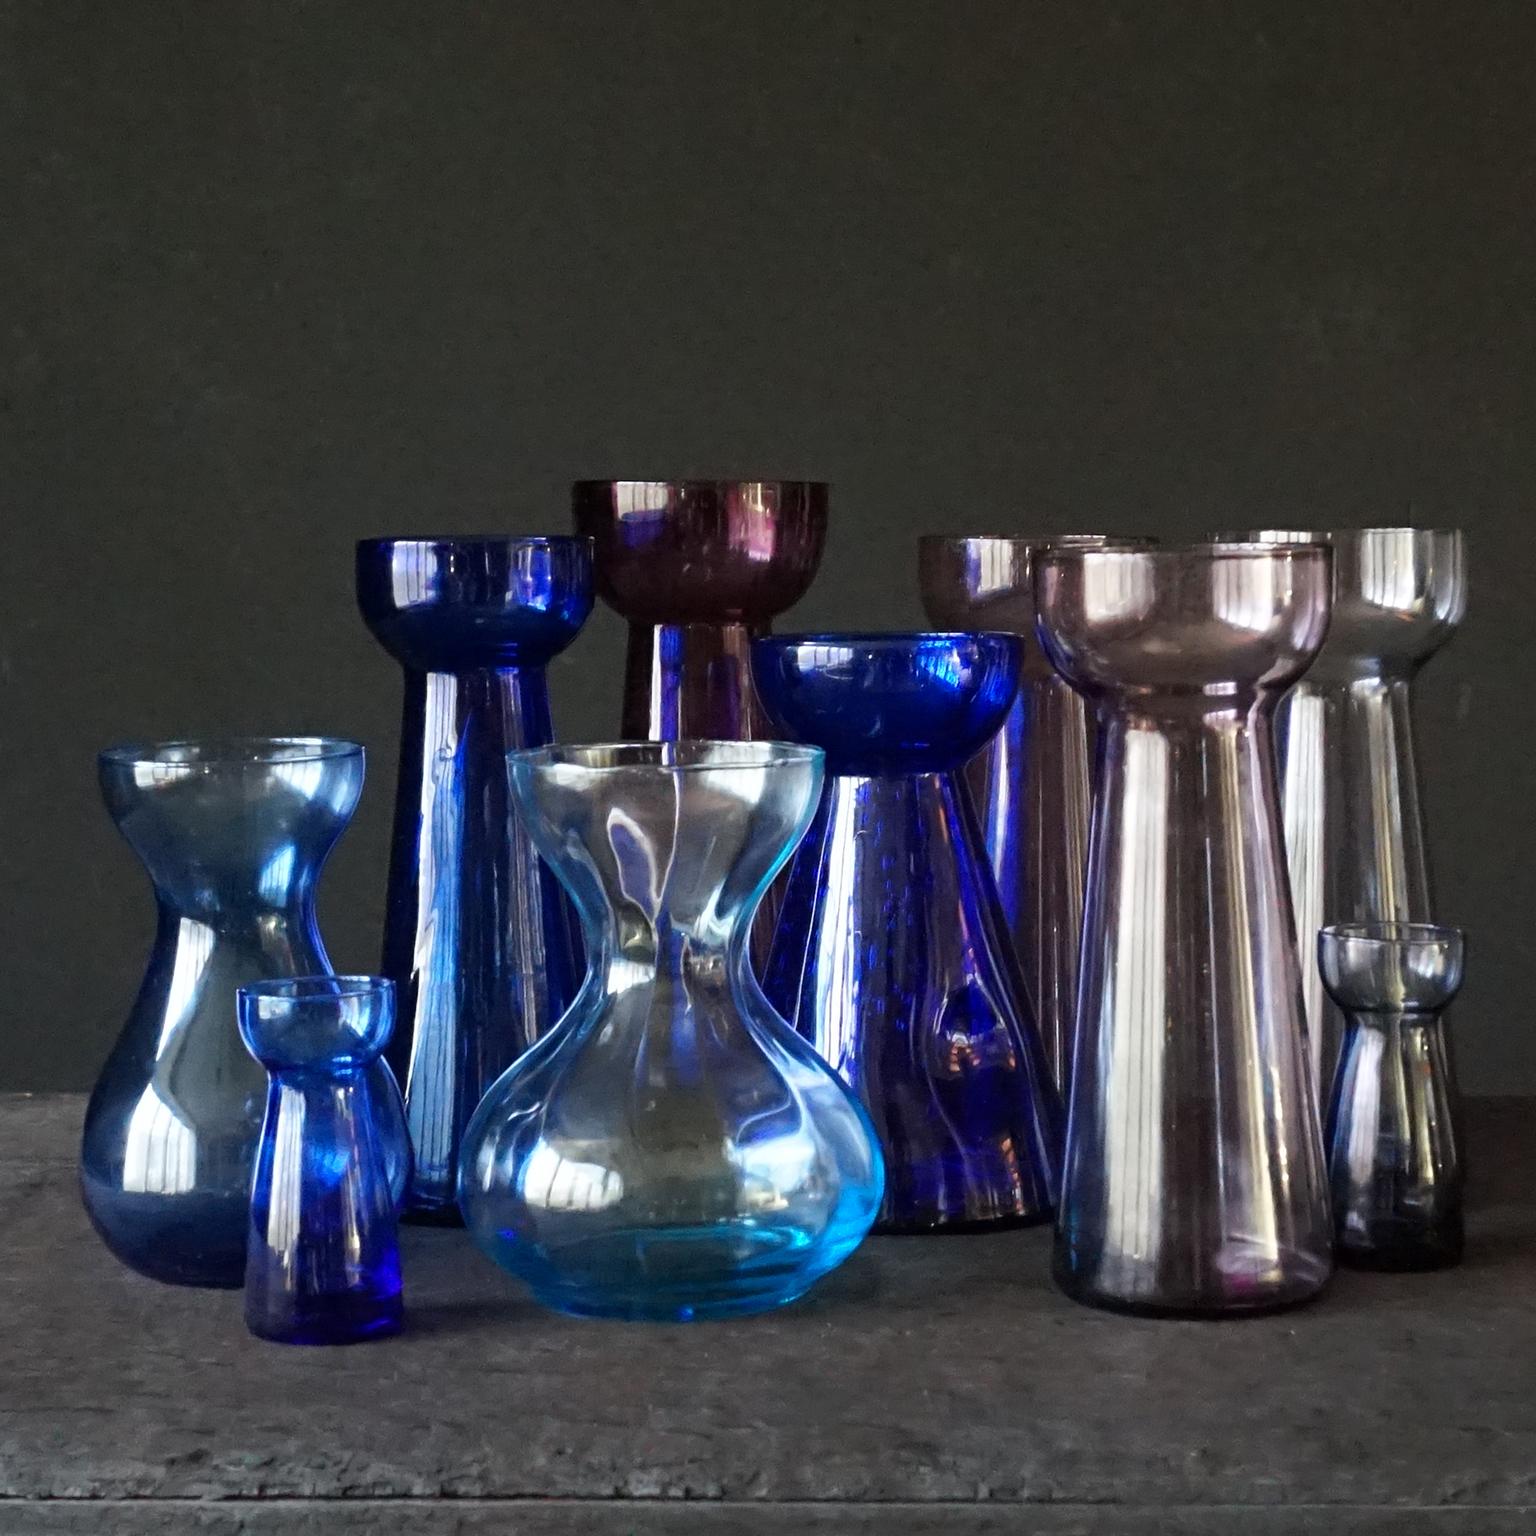 10 Vasen mit blauen und violetten Blumenzwiebeln, Hyazinthen, Narzissen, Tulpen und Krokussen.
Alles klares mundgeblasenes Glas in blauen und violetten Tönen von Royal Crystal Leerdam und von Rimac Baarn. 8 große und 2 kleine Exemplare

Geripptes